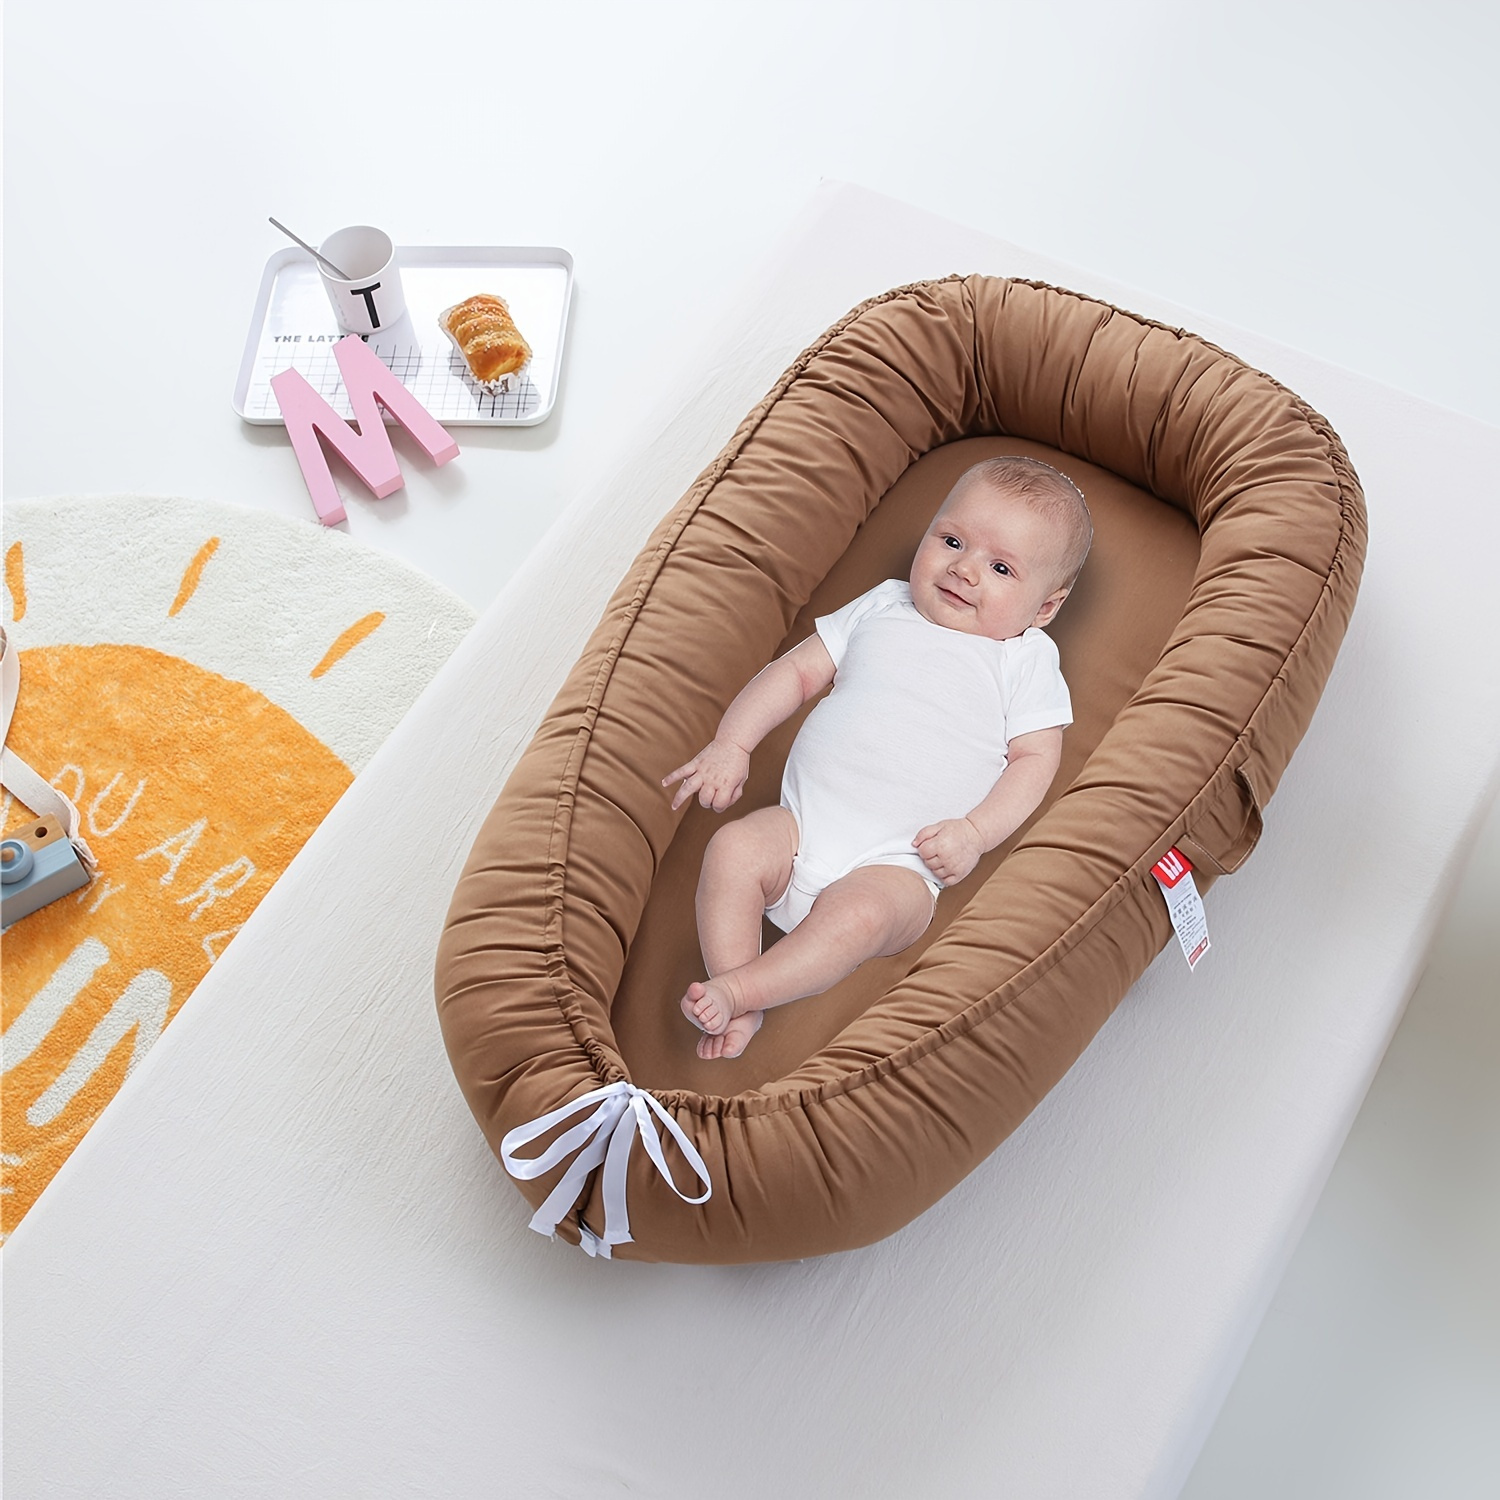 Espreguiçadeira Baby Nest Soft Baby Nest Lounger ajustável respirável  espreguiçadeira para recém-nascido co-dormindo espreguiçadeira  recém-nascido bebê aconchego ninho dorminhoco